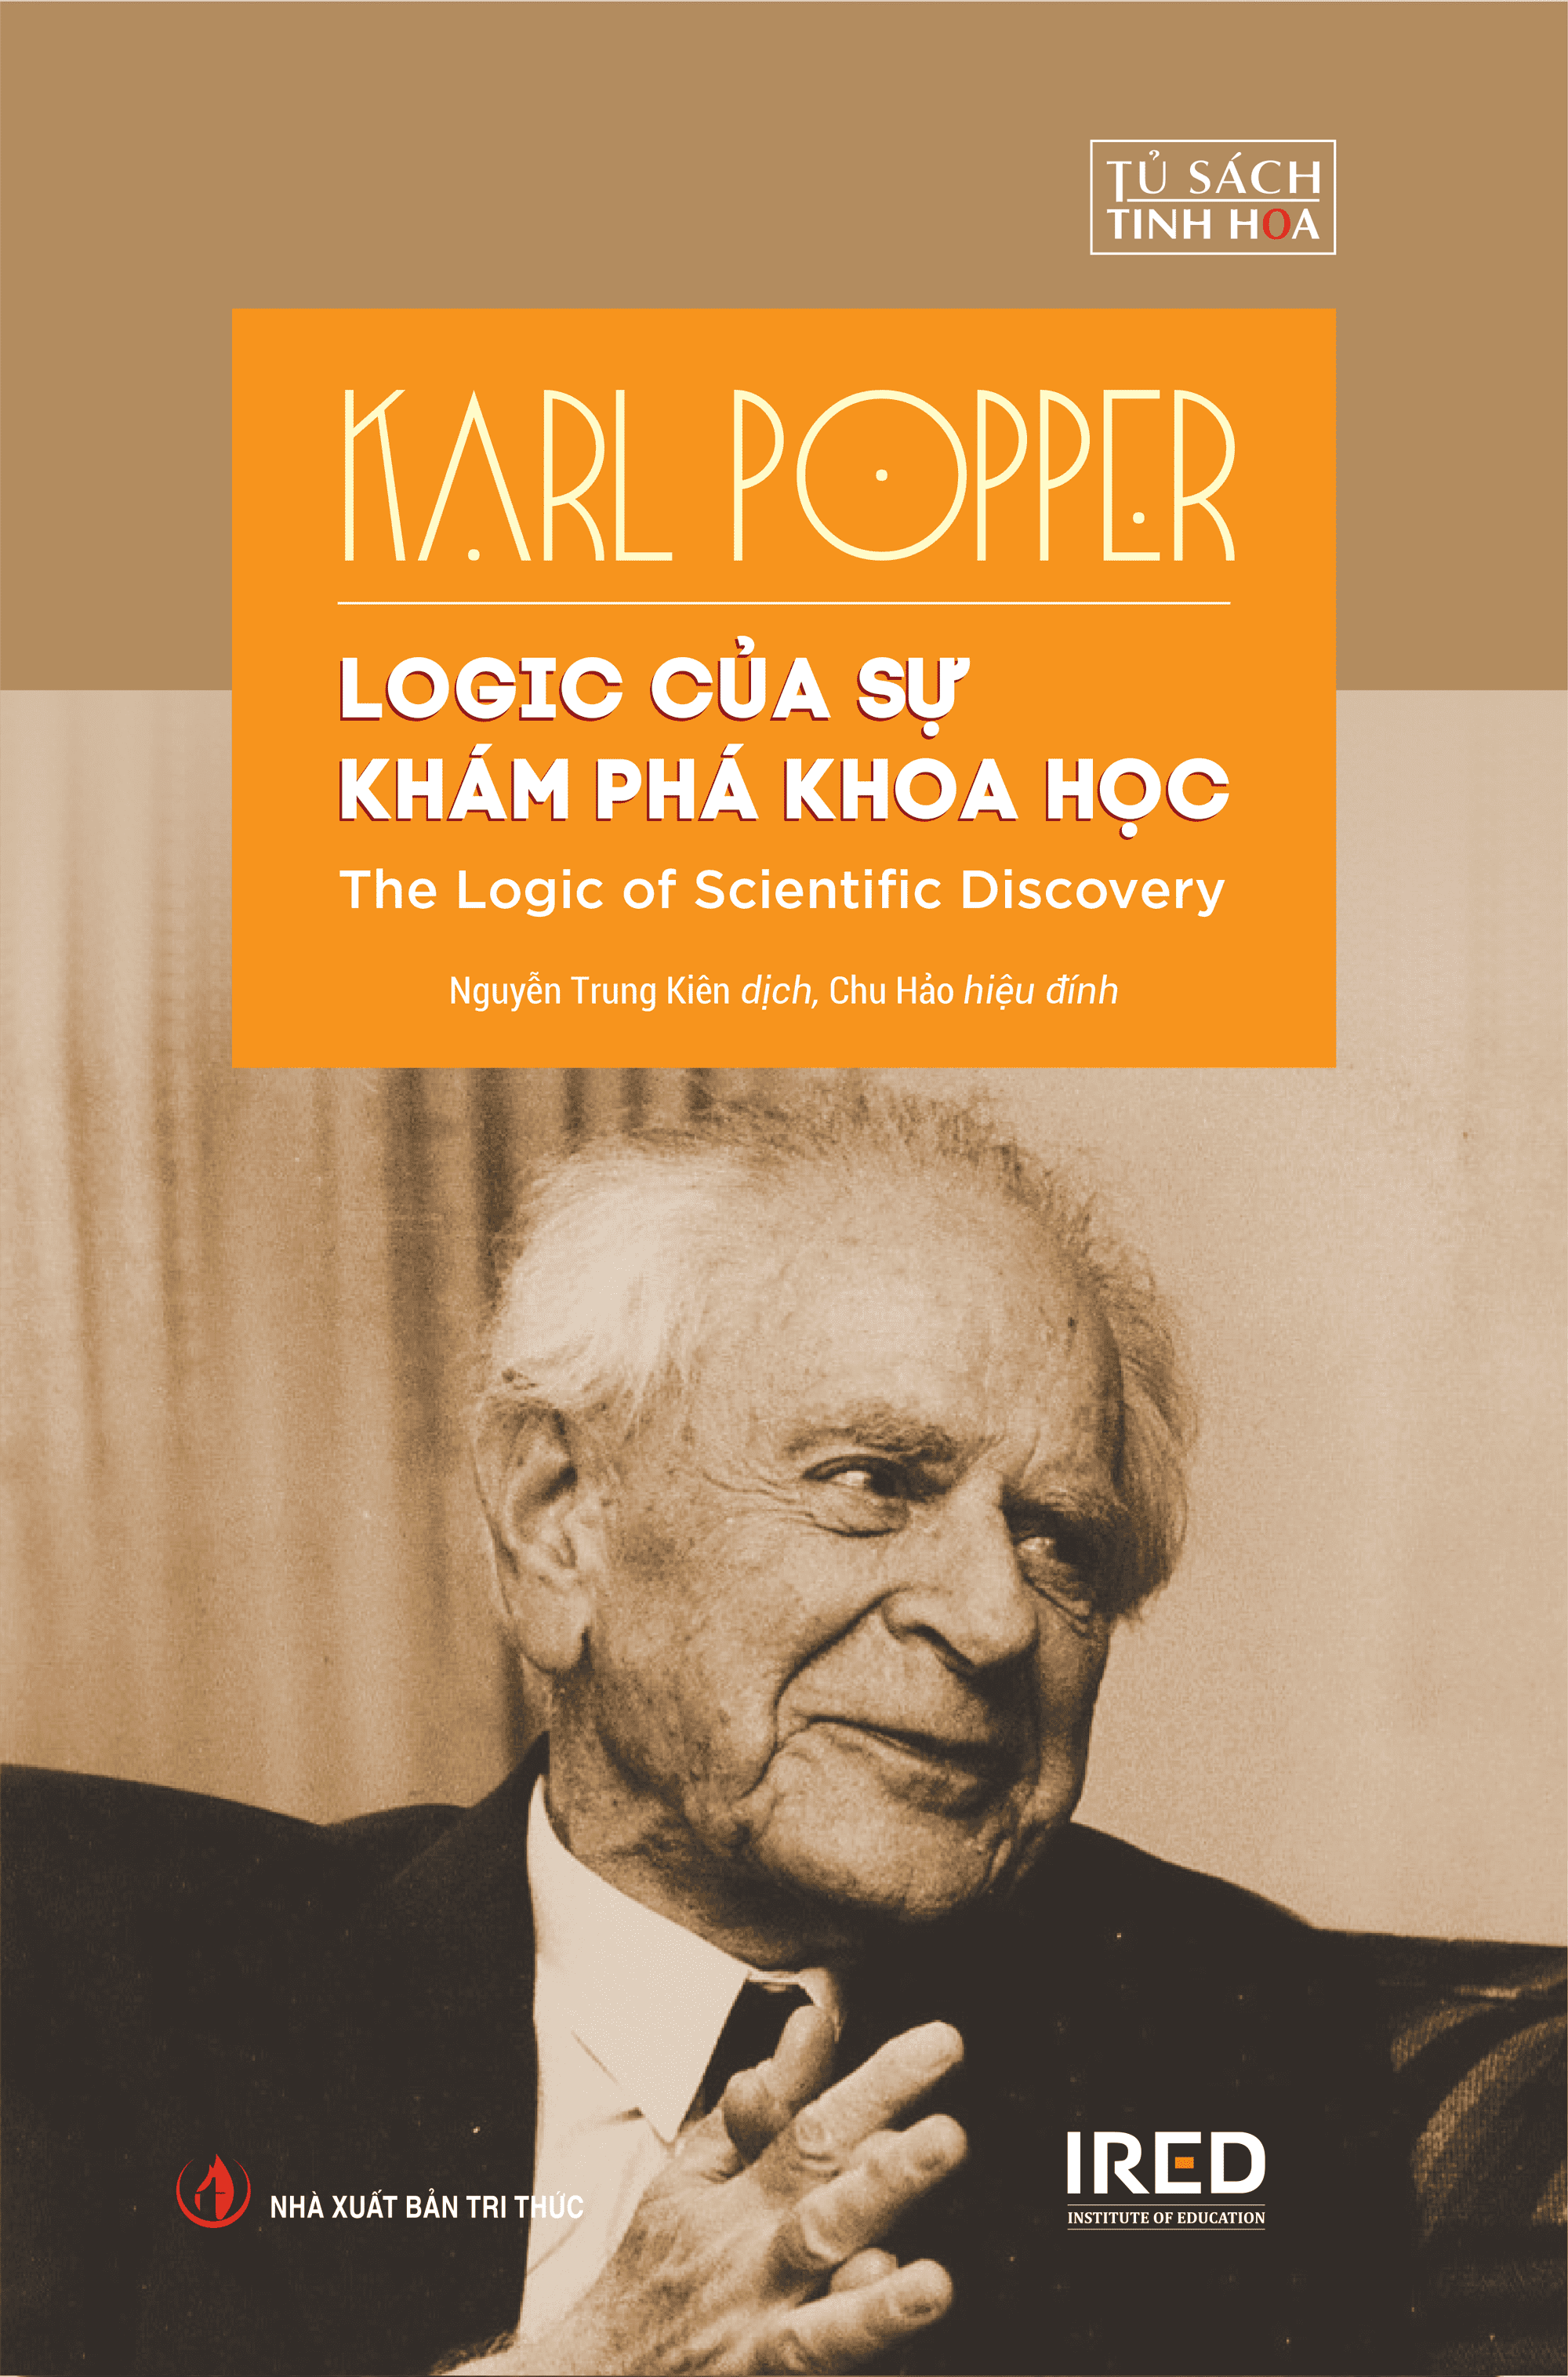 Sách IRED Books - Logic của sự khám phá khoa học (The Logic of Scientific Discovery) - Karl Popper